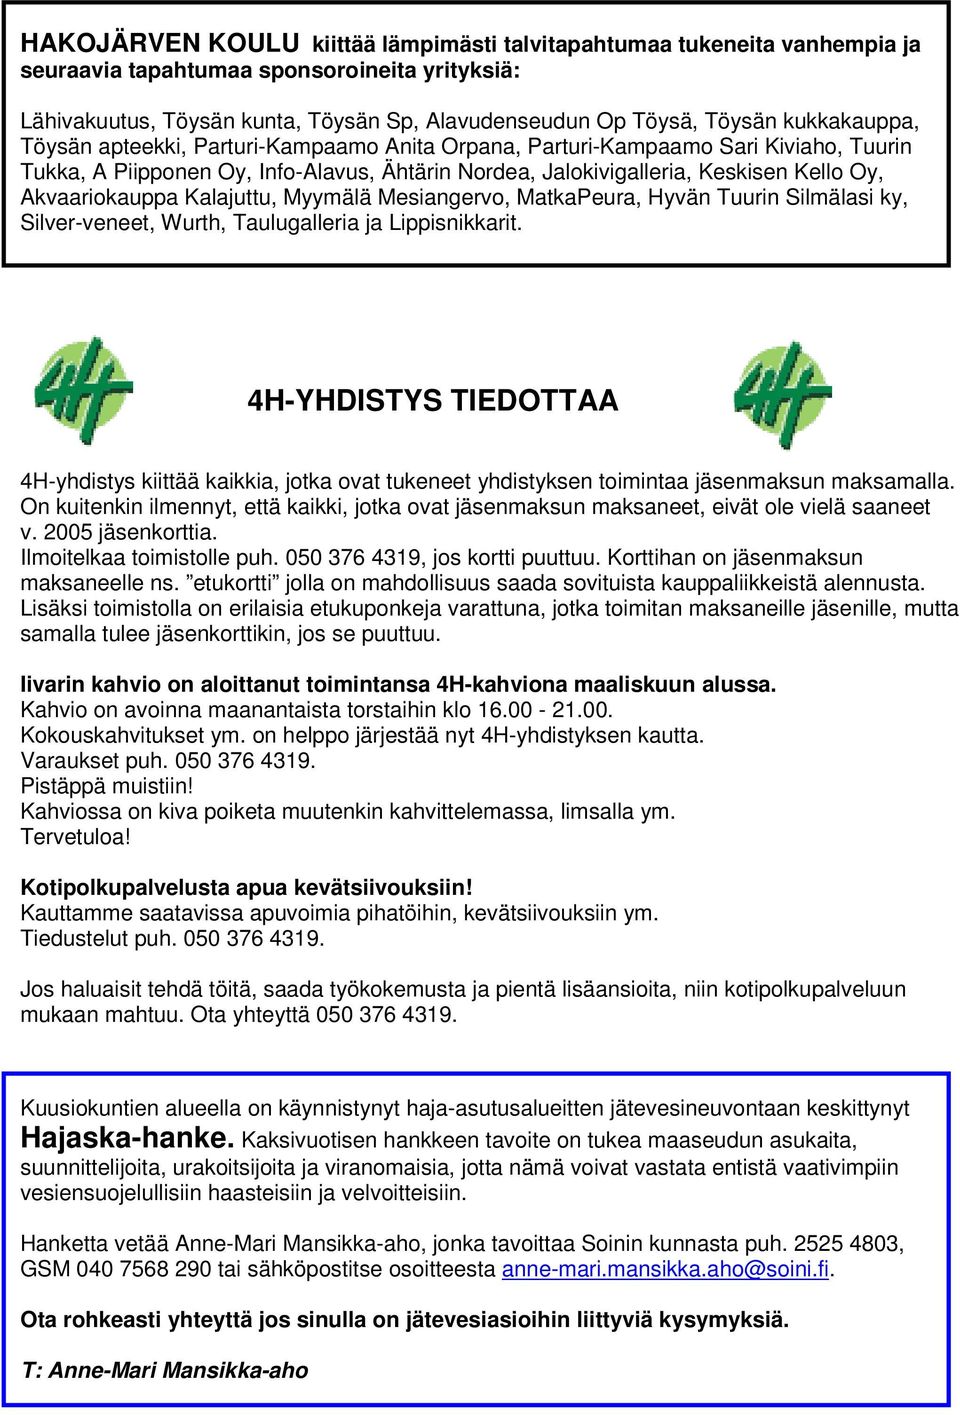 Akvaariokauppa Kalajuttu, Myymälä Mesiangervo, MatkaPeura, Hyvän Tuurin Silmälasi ky, Silver-veneet, Wurth, Taulugalleria ja Lippisnikkarit.